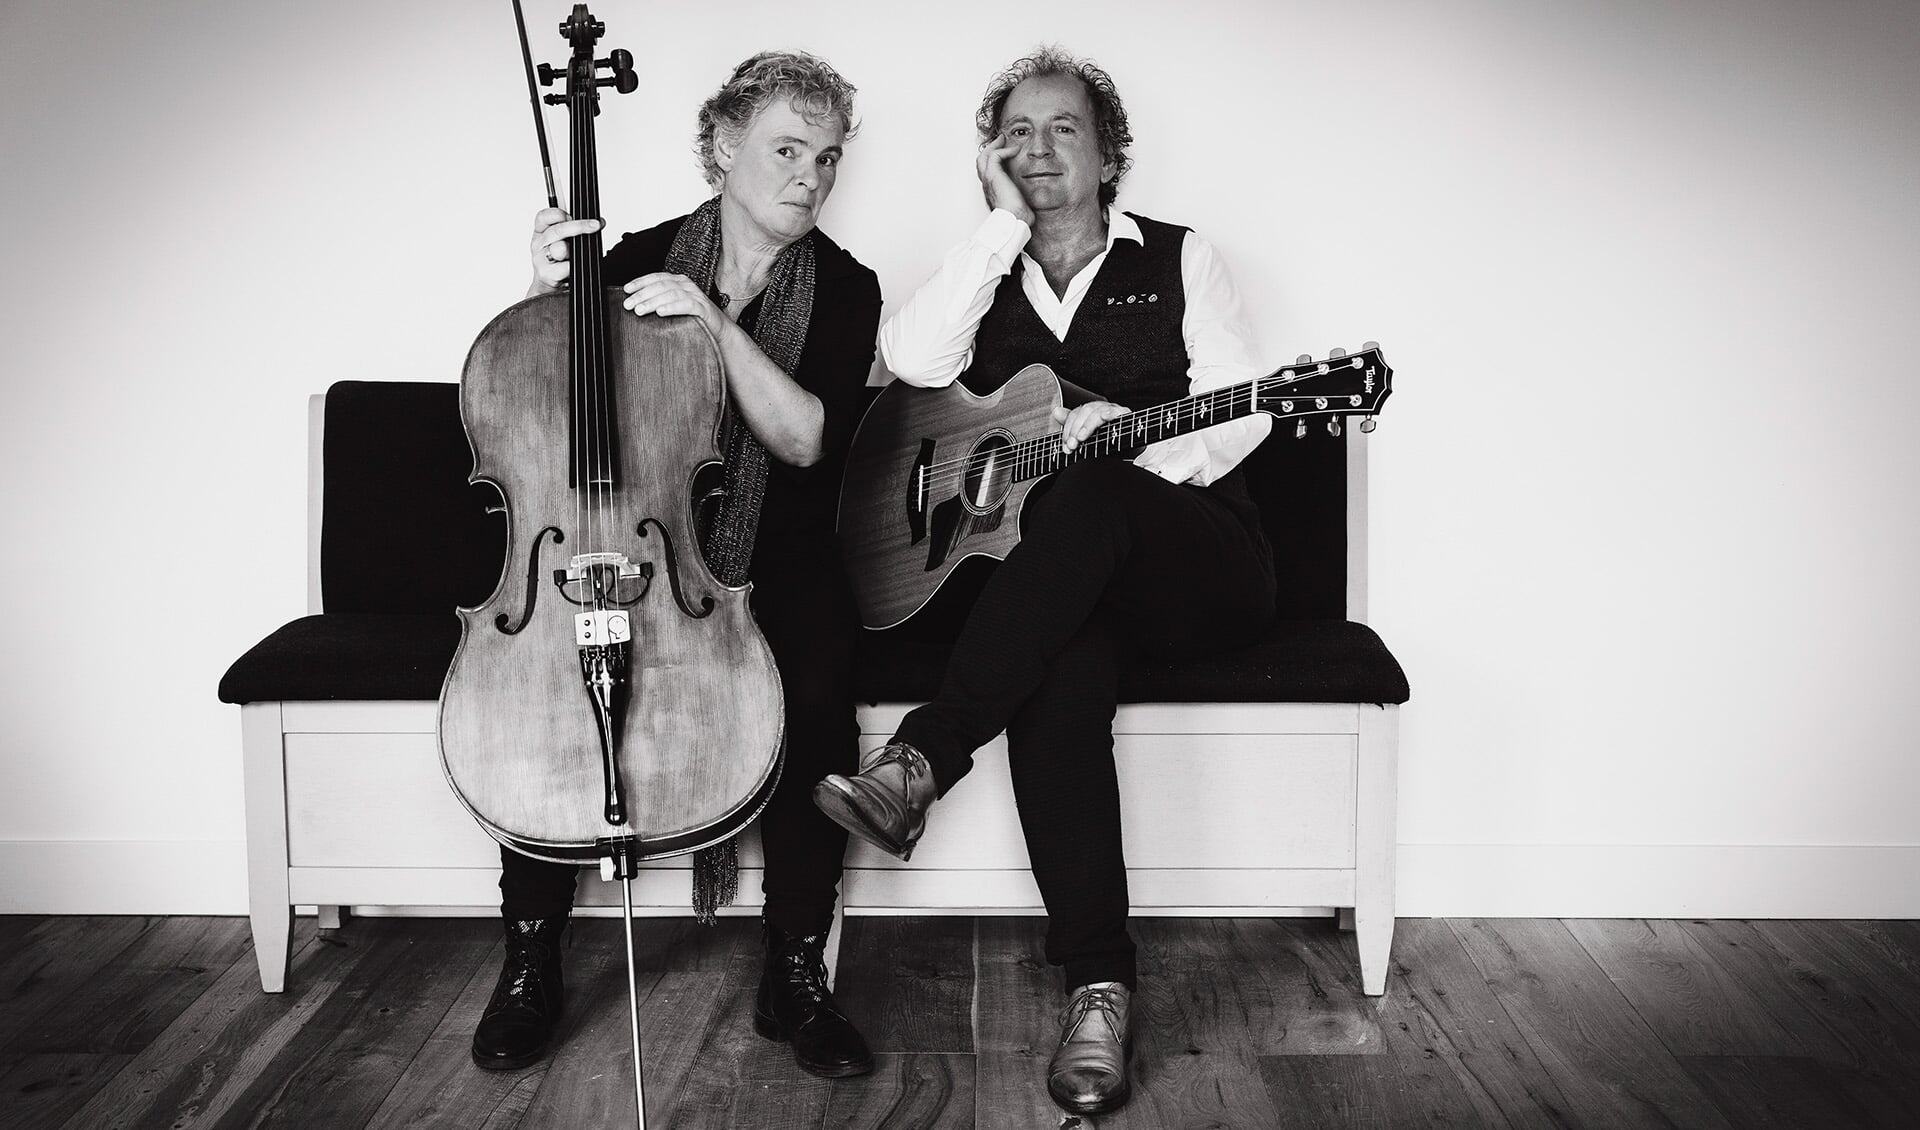 De muzikanten Janske Polman en Ton Lukassen vormen de basis van het muzikaal project 'tonentalen'.